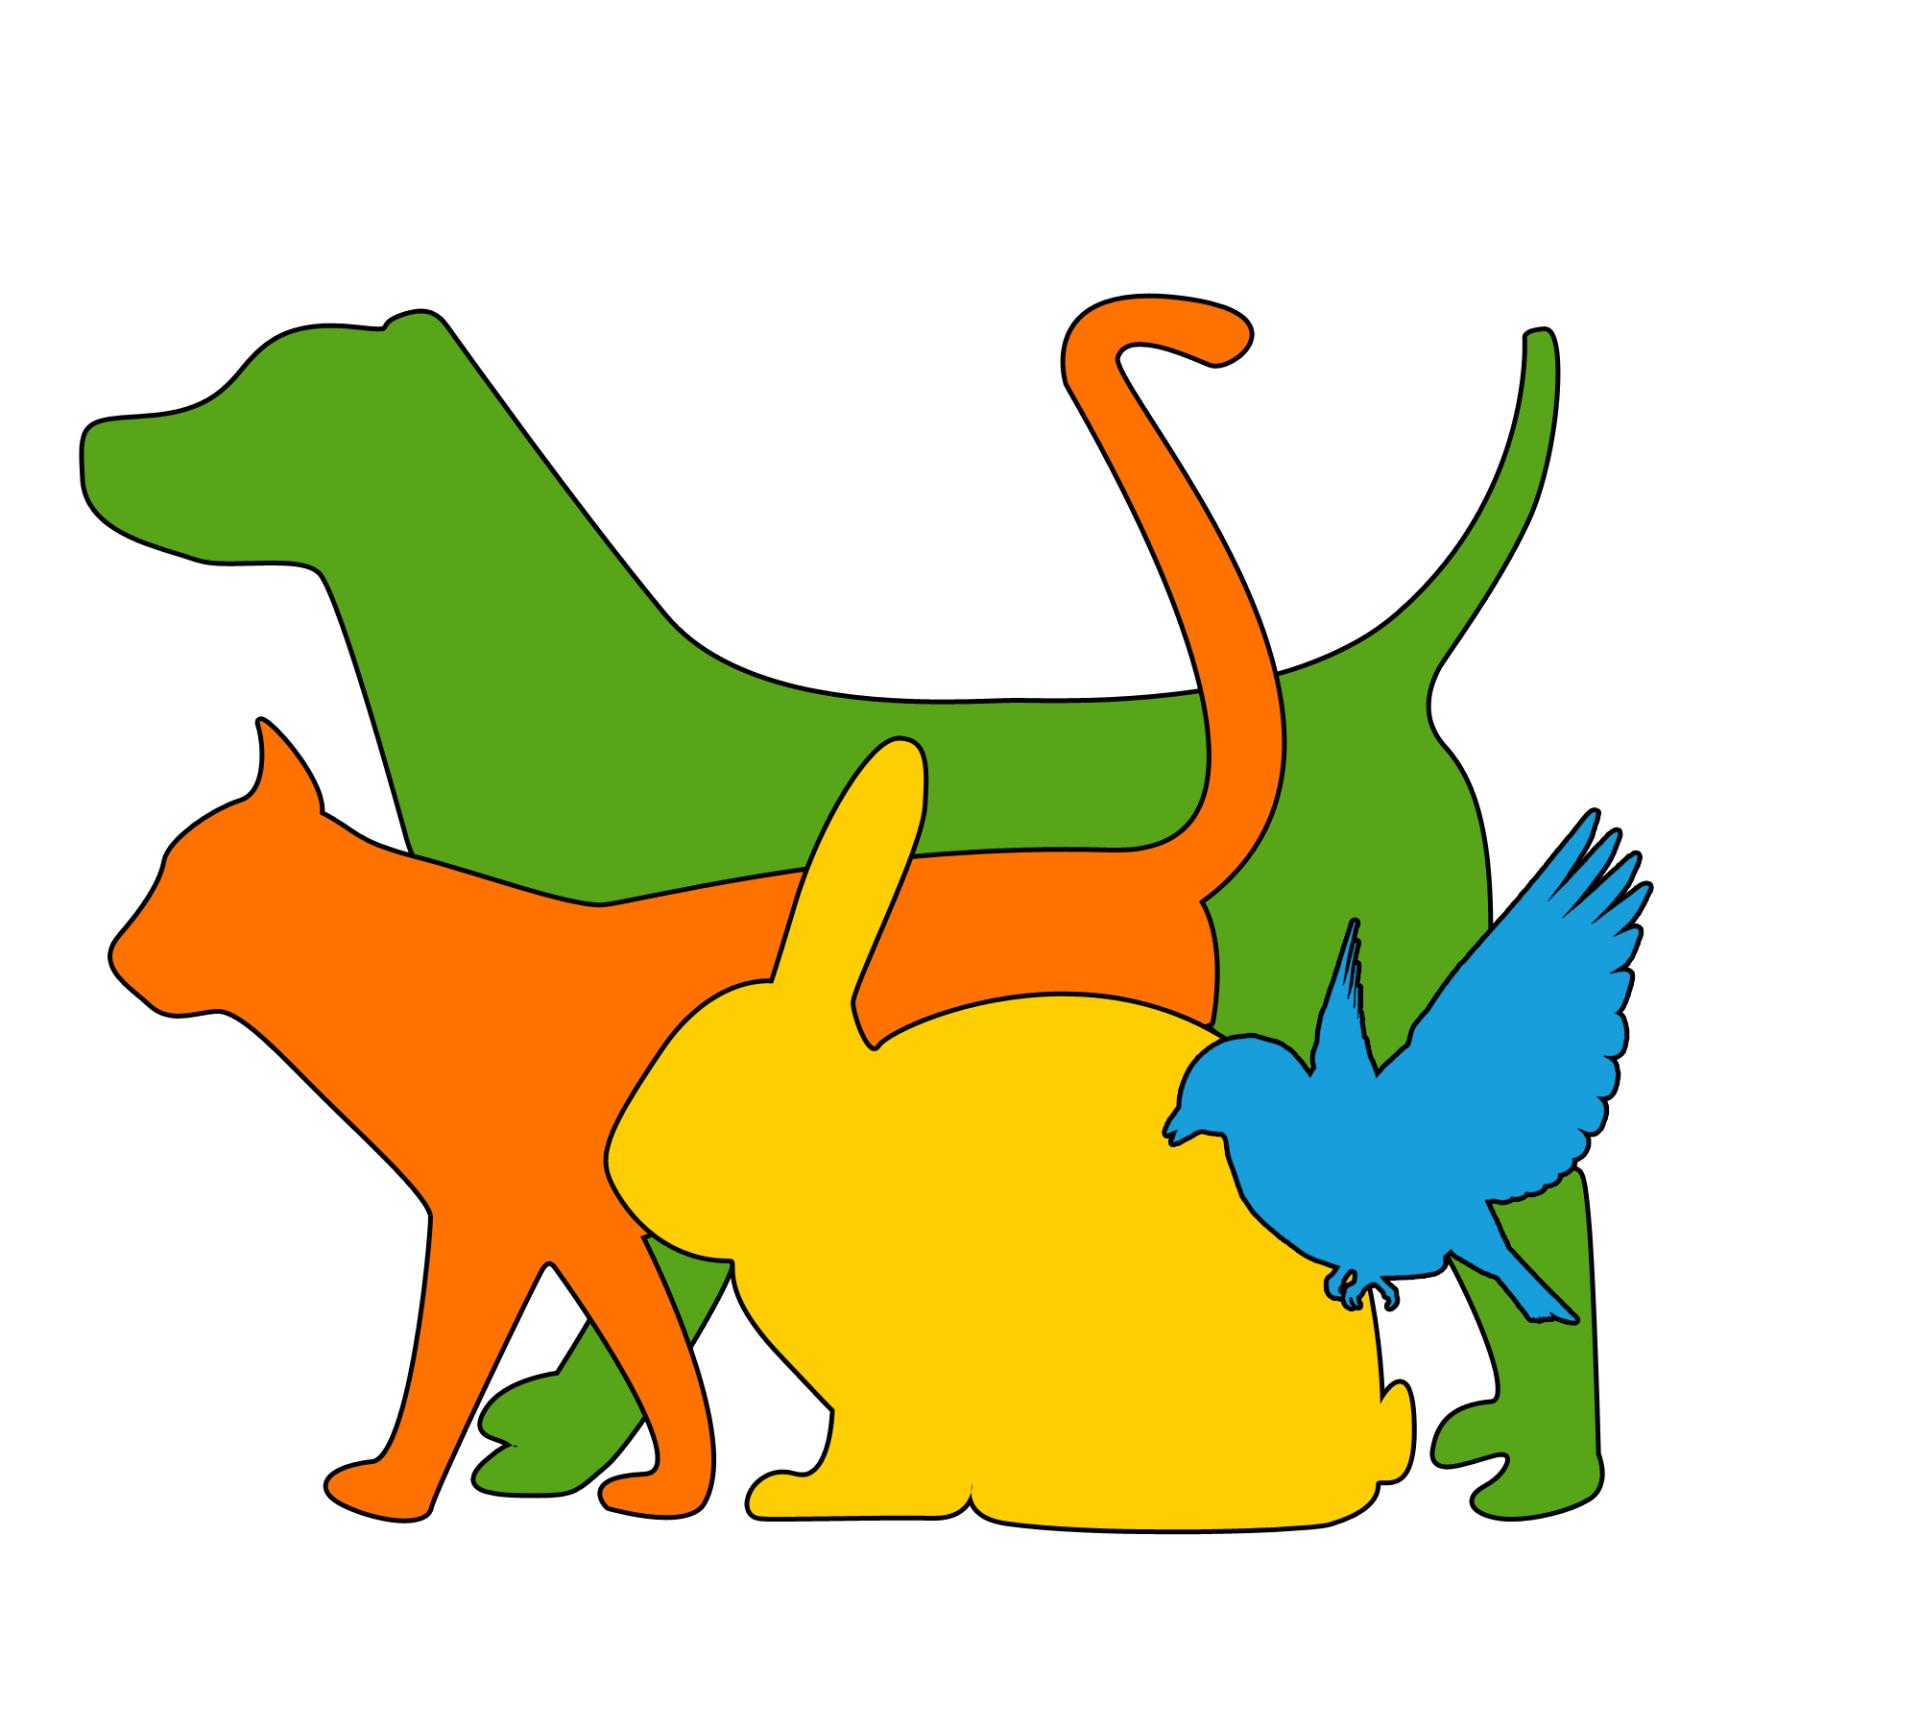 Förderverein für regionale Entwicklung_Tiere Logo